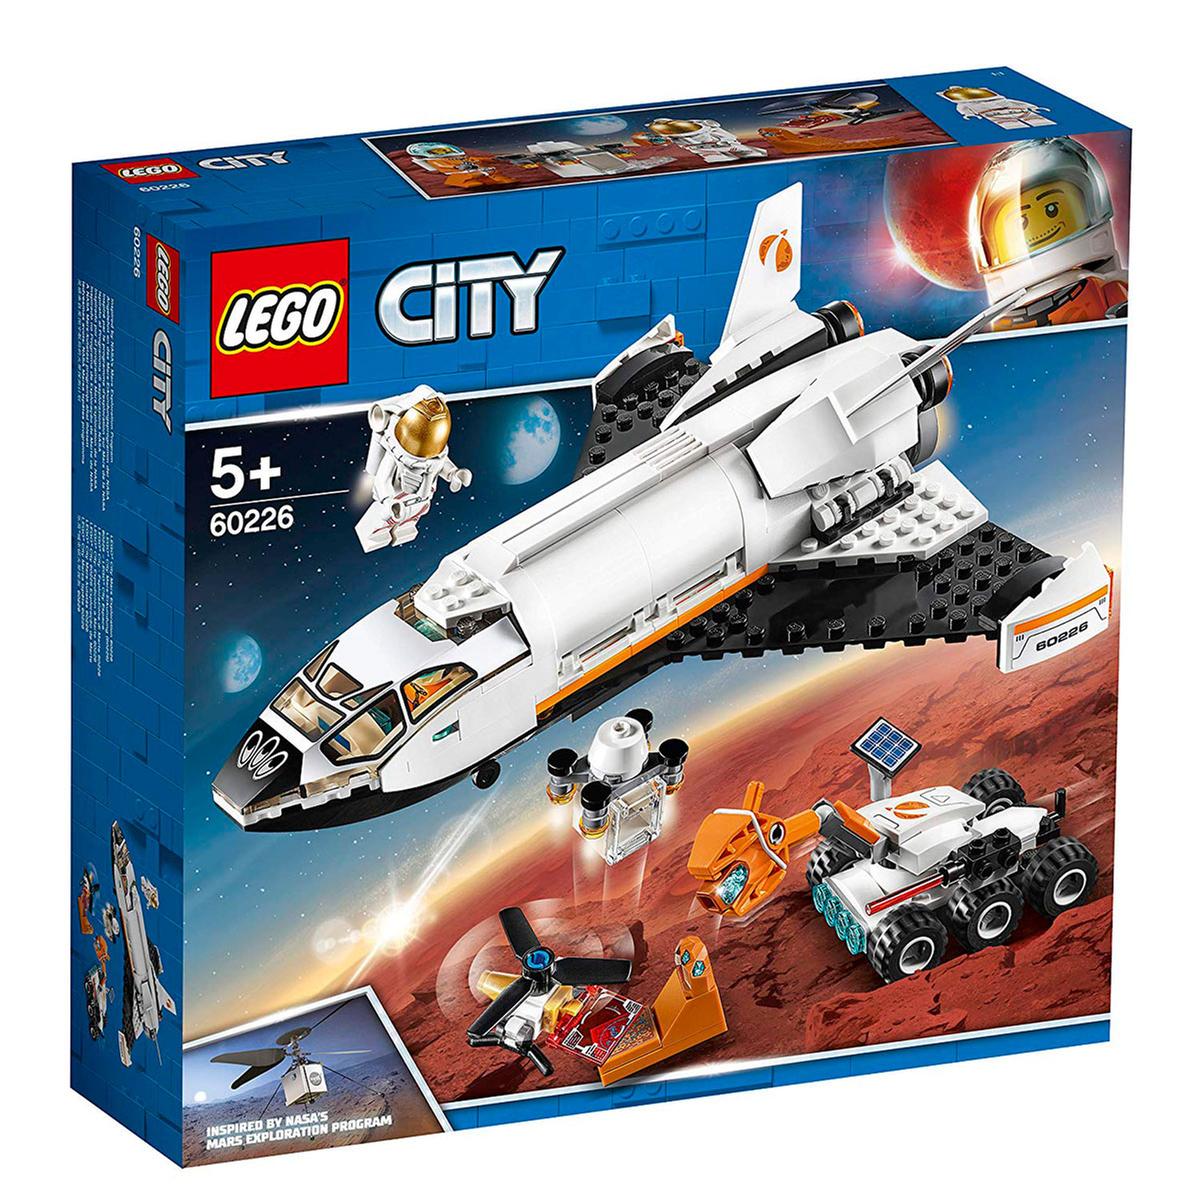 LEGO City - Vaivém Espacial de Pesquisa em Marte - 60226 | LEGO | Loja de  brinquedos e videojogos Online Toysrus